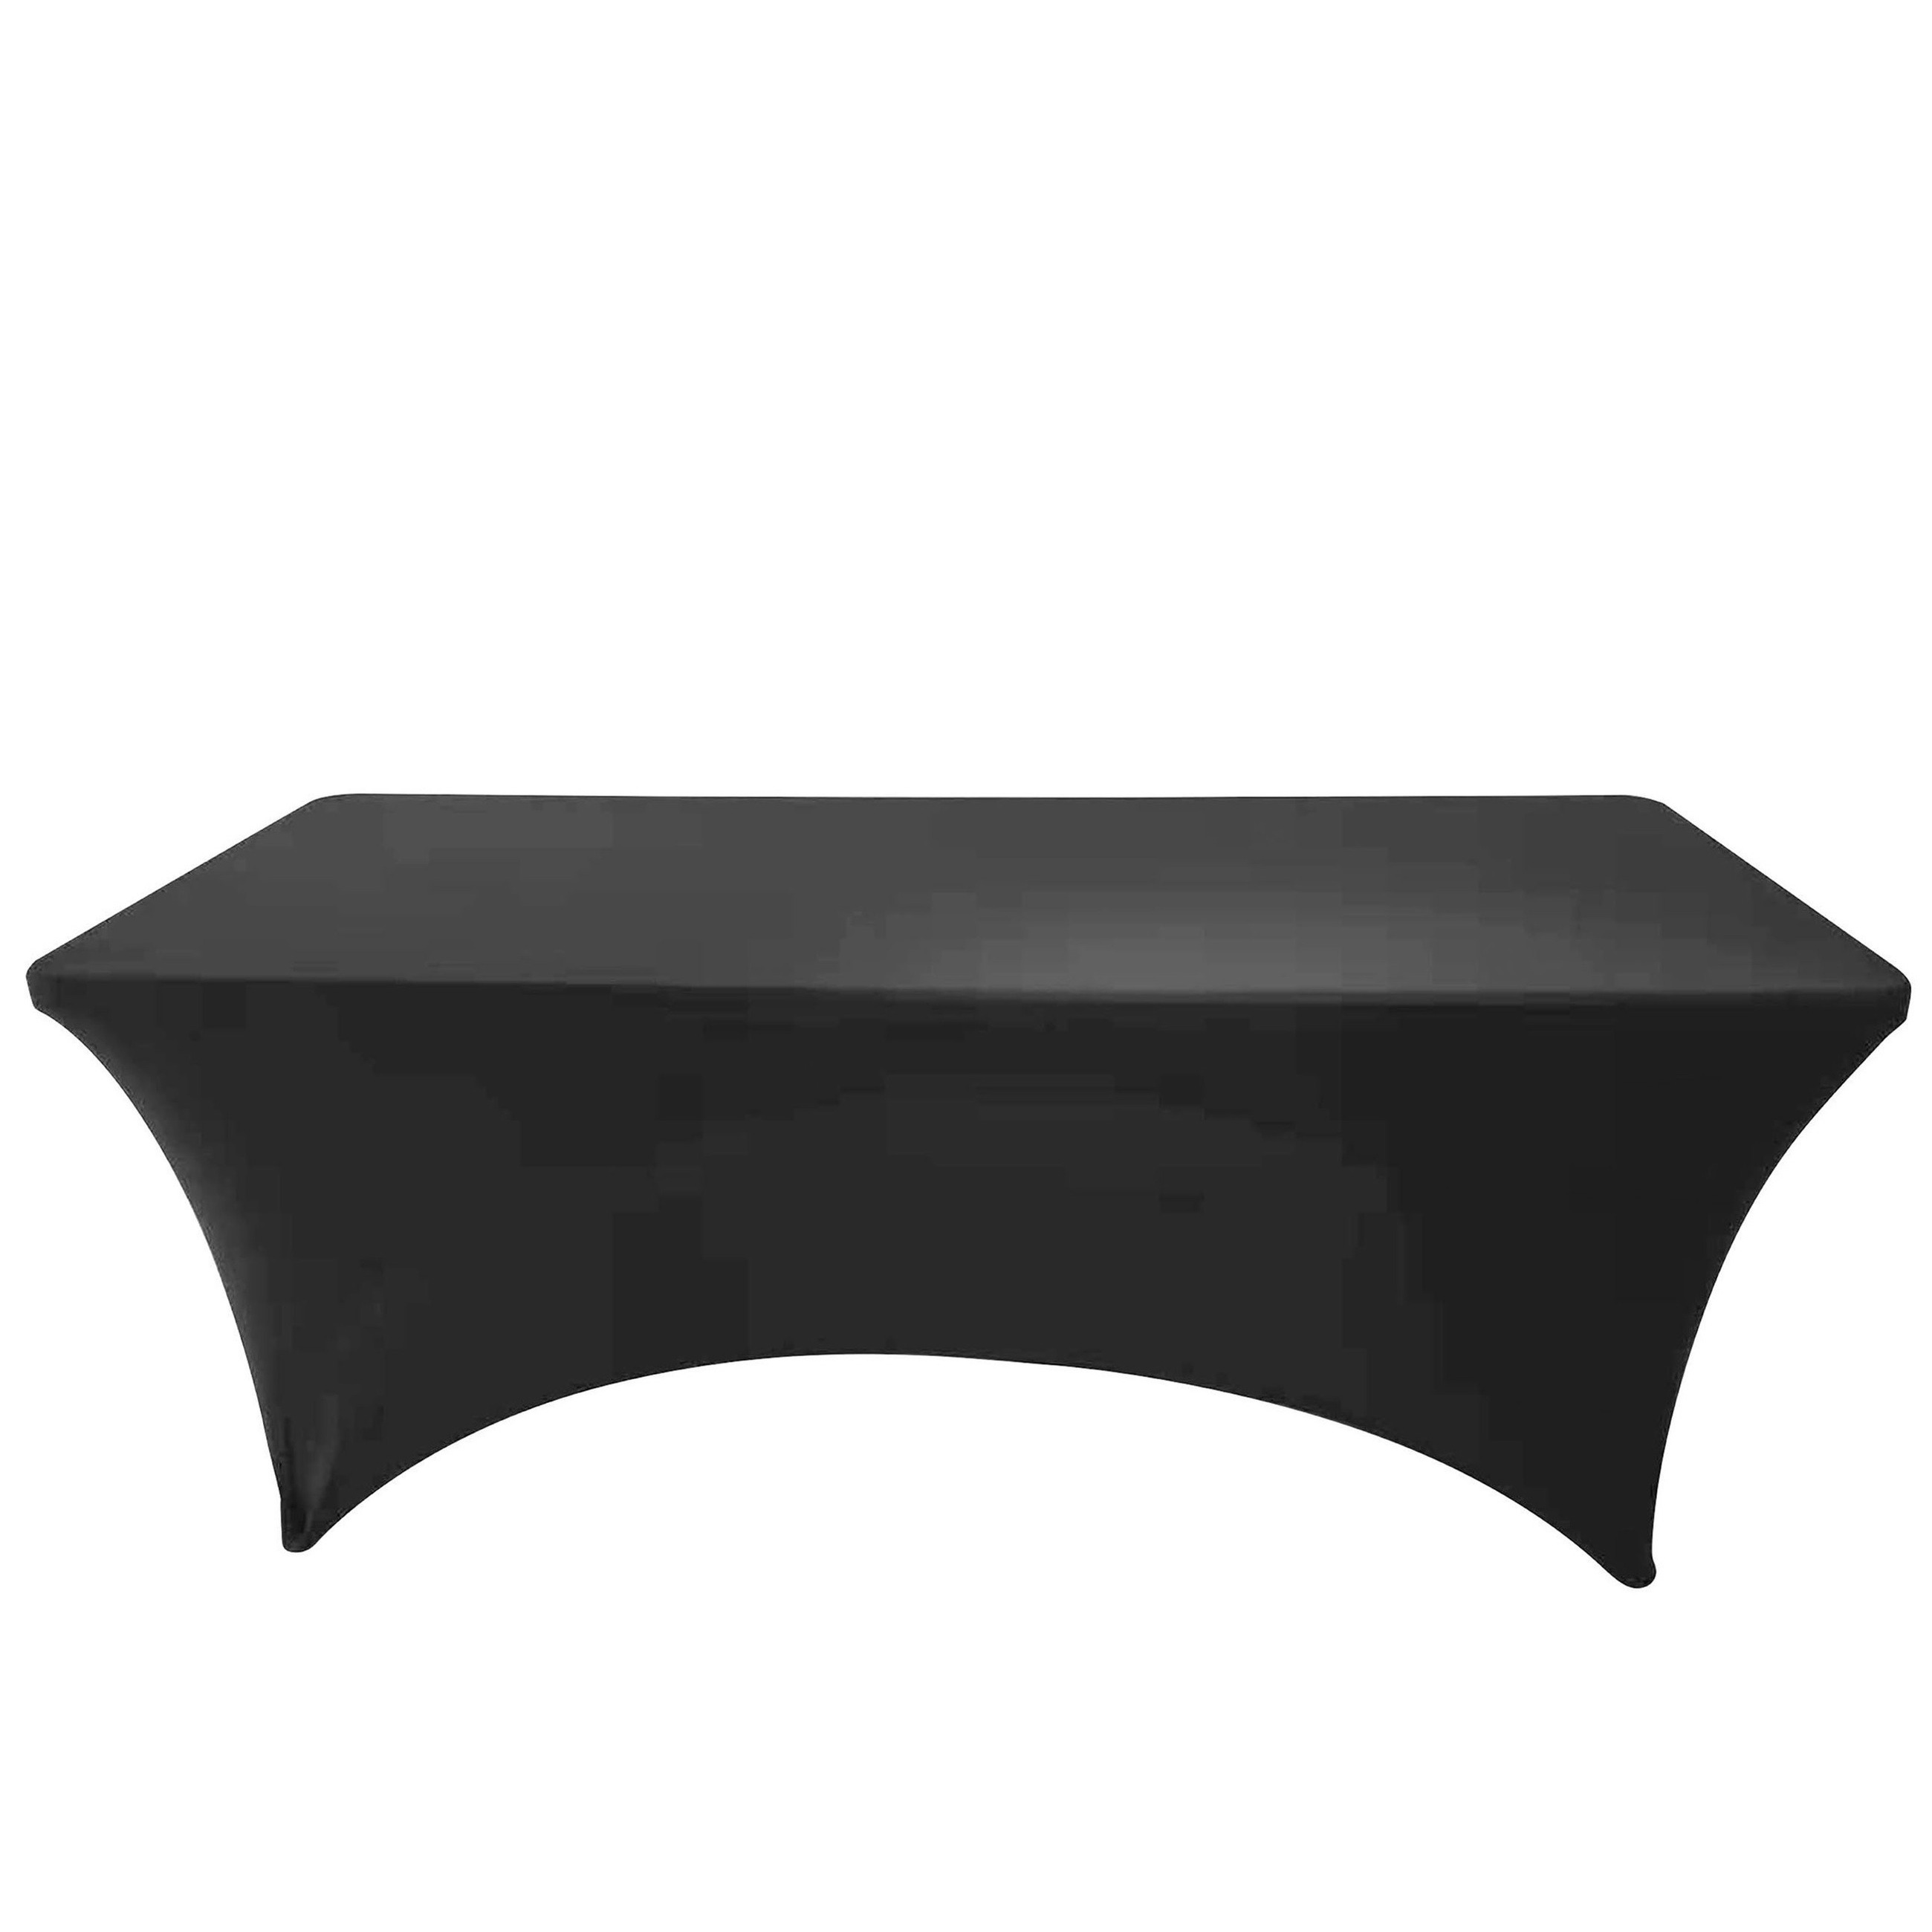 Sunnydays nette afdekhoes voor langwerpige tafel - zwart - spandex elastiek - 180 x 75 x 74 cm -